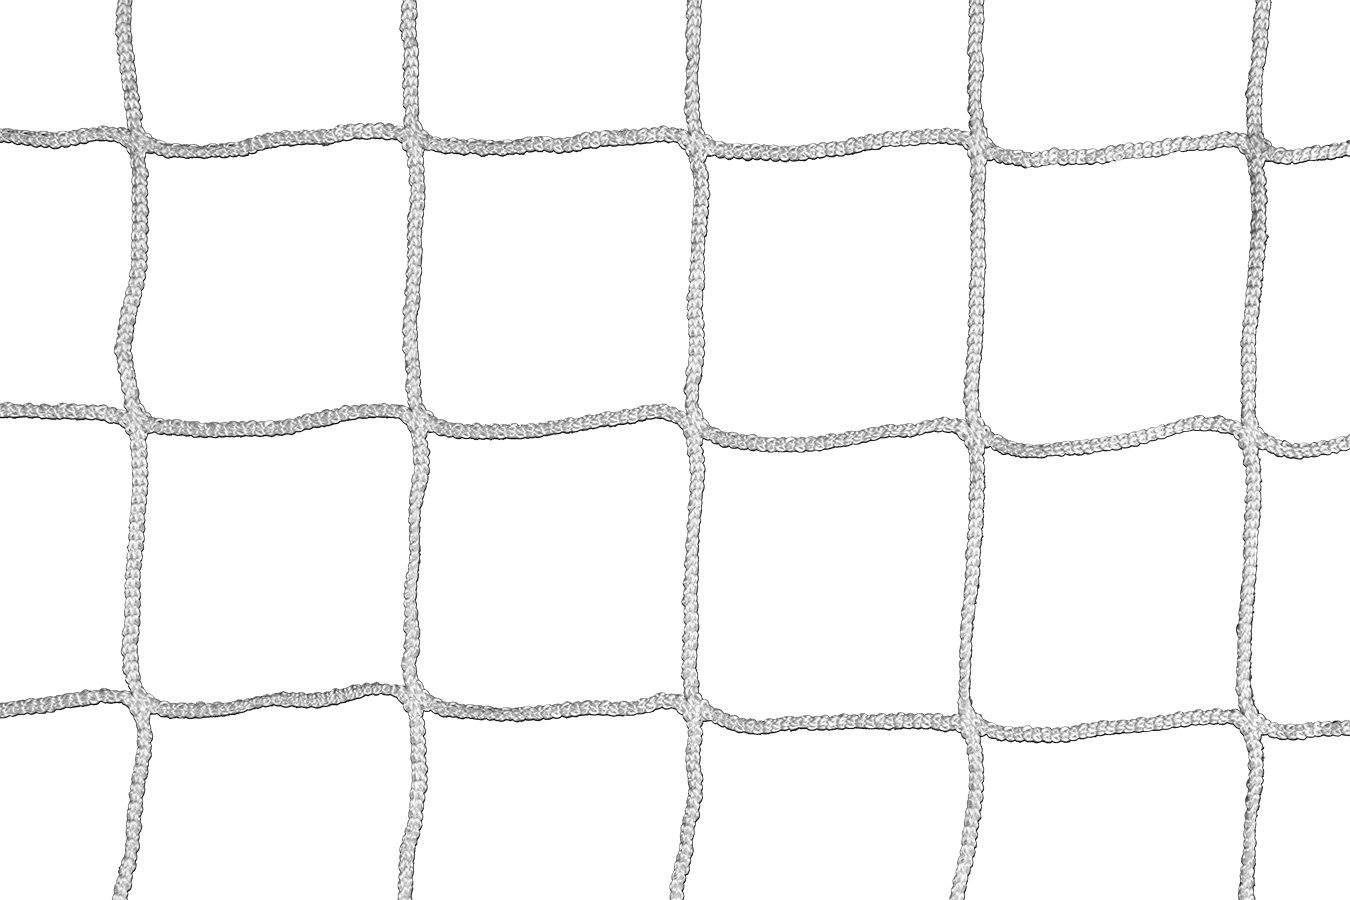 Kwikgoal Official Futsal Goal Net | 3B5001 Nets Kwikgoal 